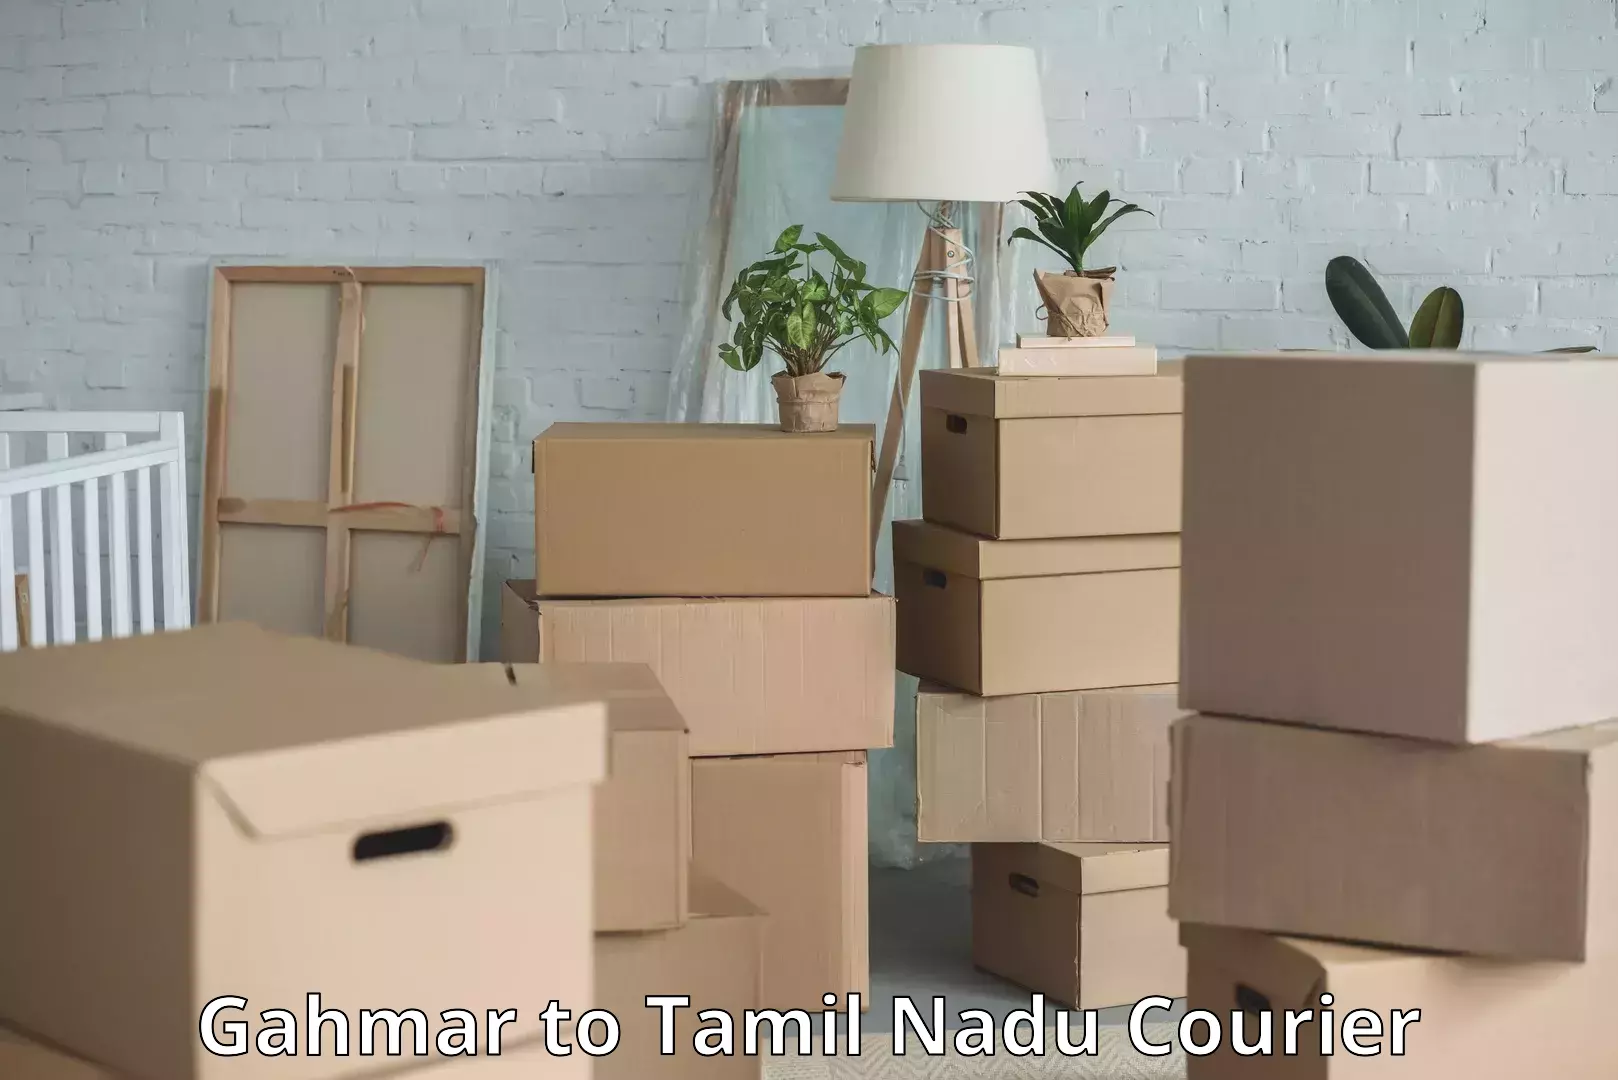 Luggage transport company Gahmar to Tamil Nadu